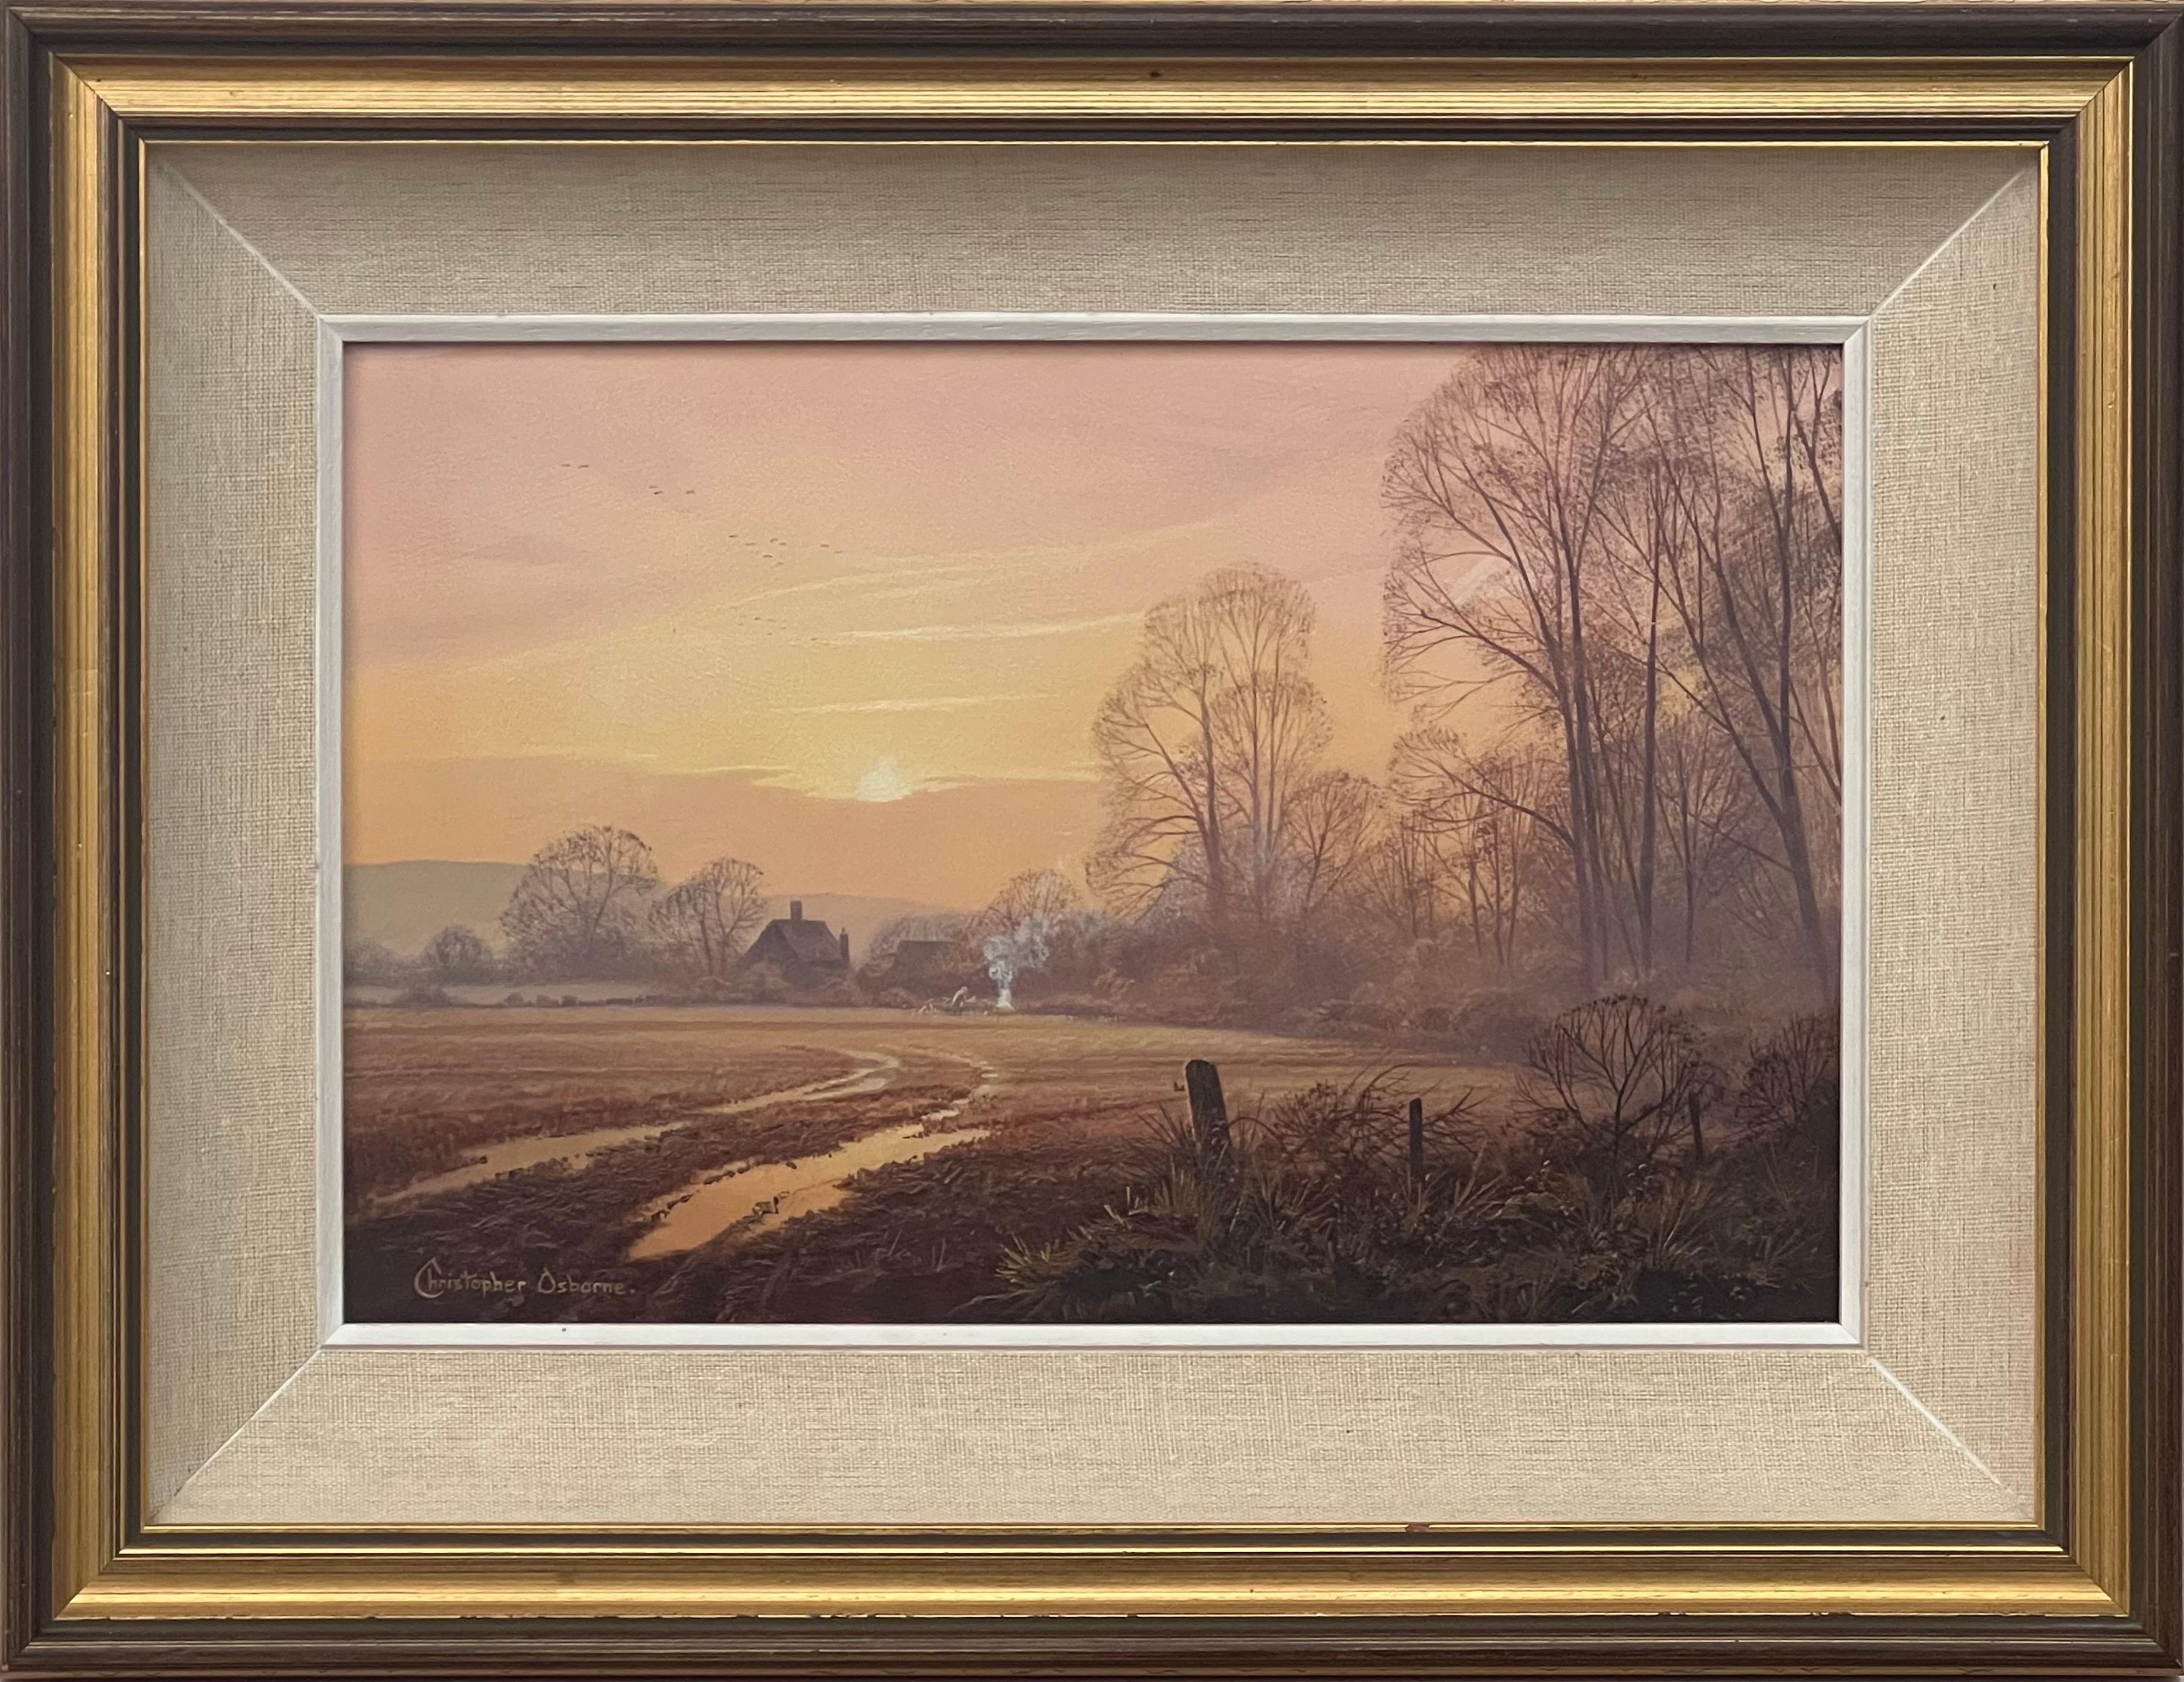 Christopher Osborne Figurative Painting – The Farm in the Woods at Sunset in der englischen Landschaft mit warmen braunen Farben